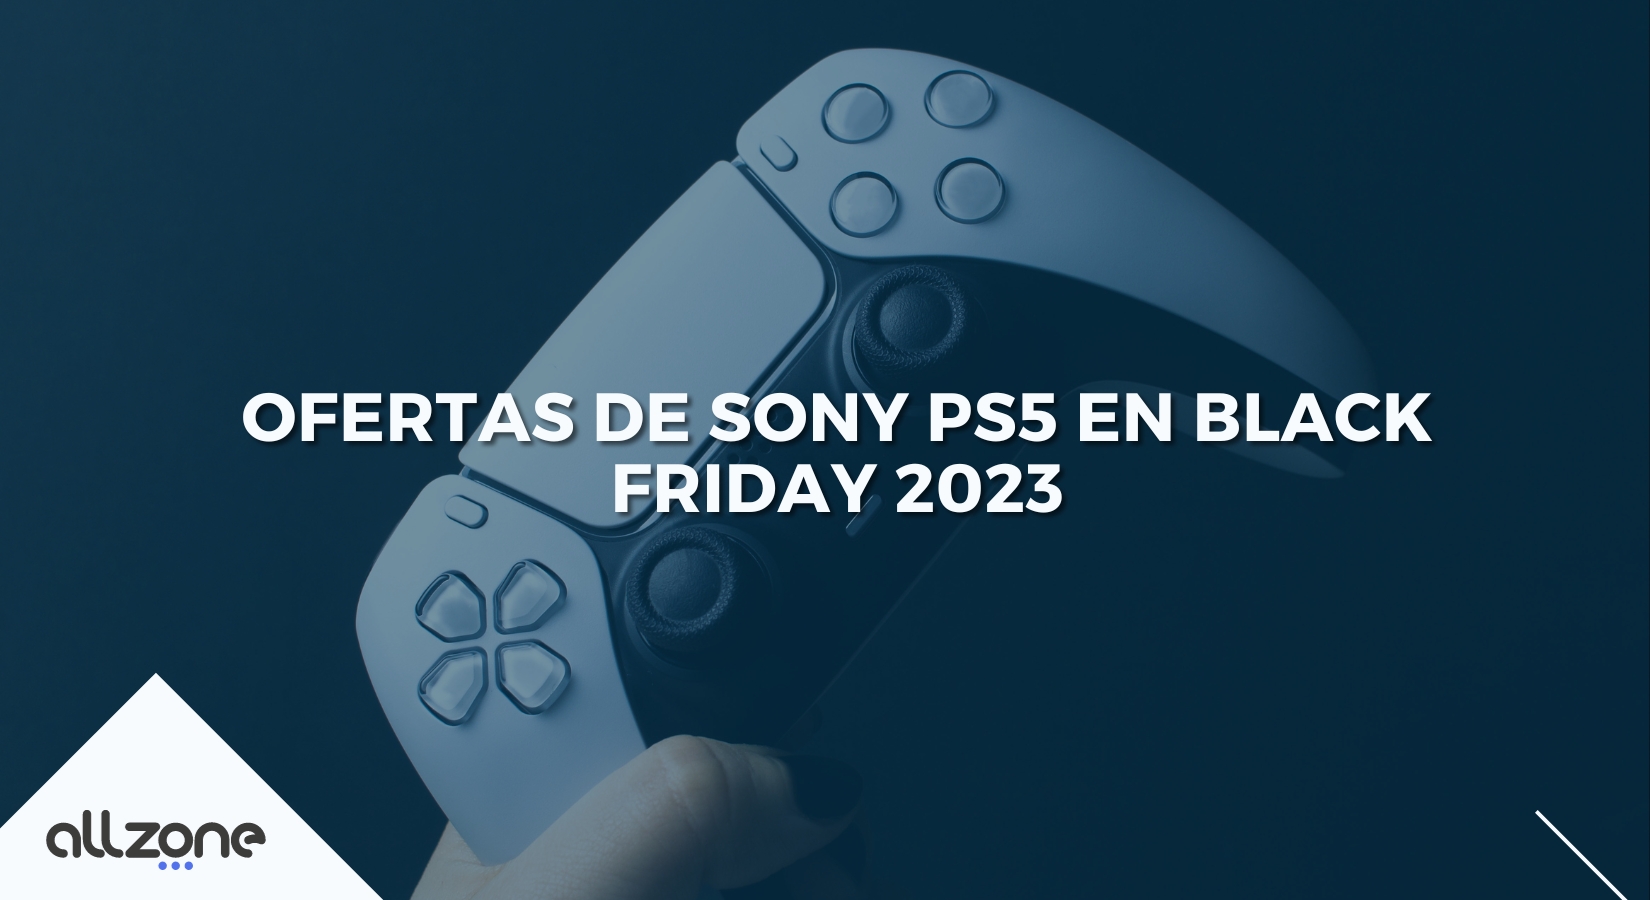 PS5 Black Friday 2023: Ofertas en Play Station 5 y sus accesorios